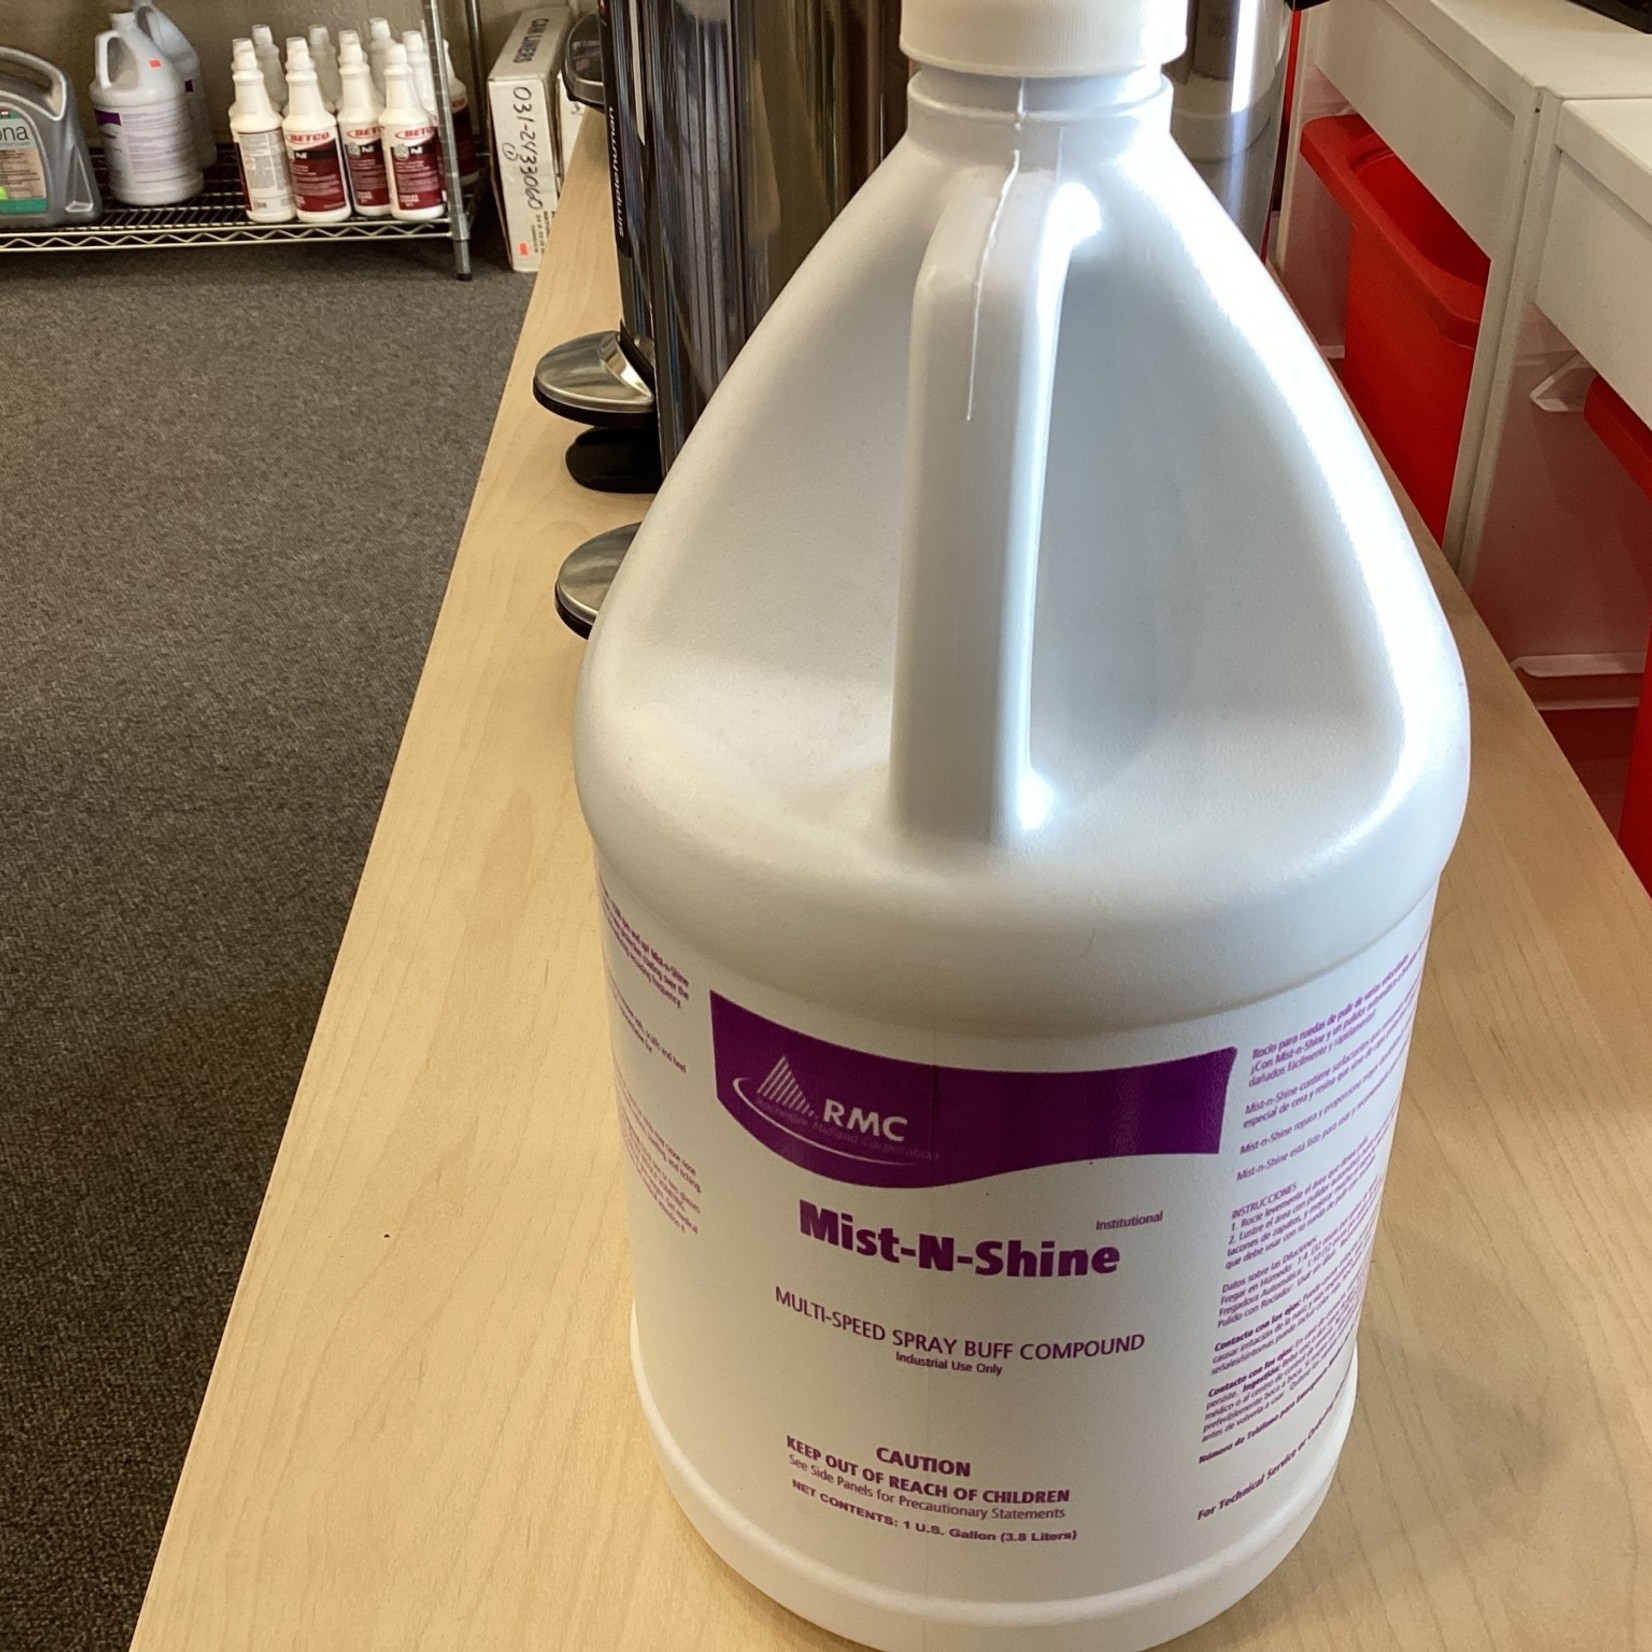 RMC Mist-N- Shine multi-speed spray buff compound 3.8 liters